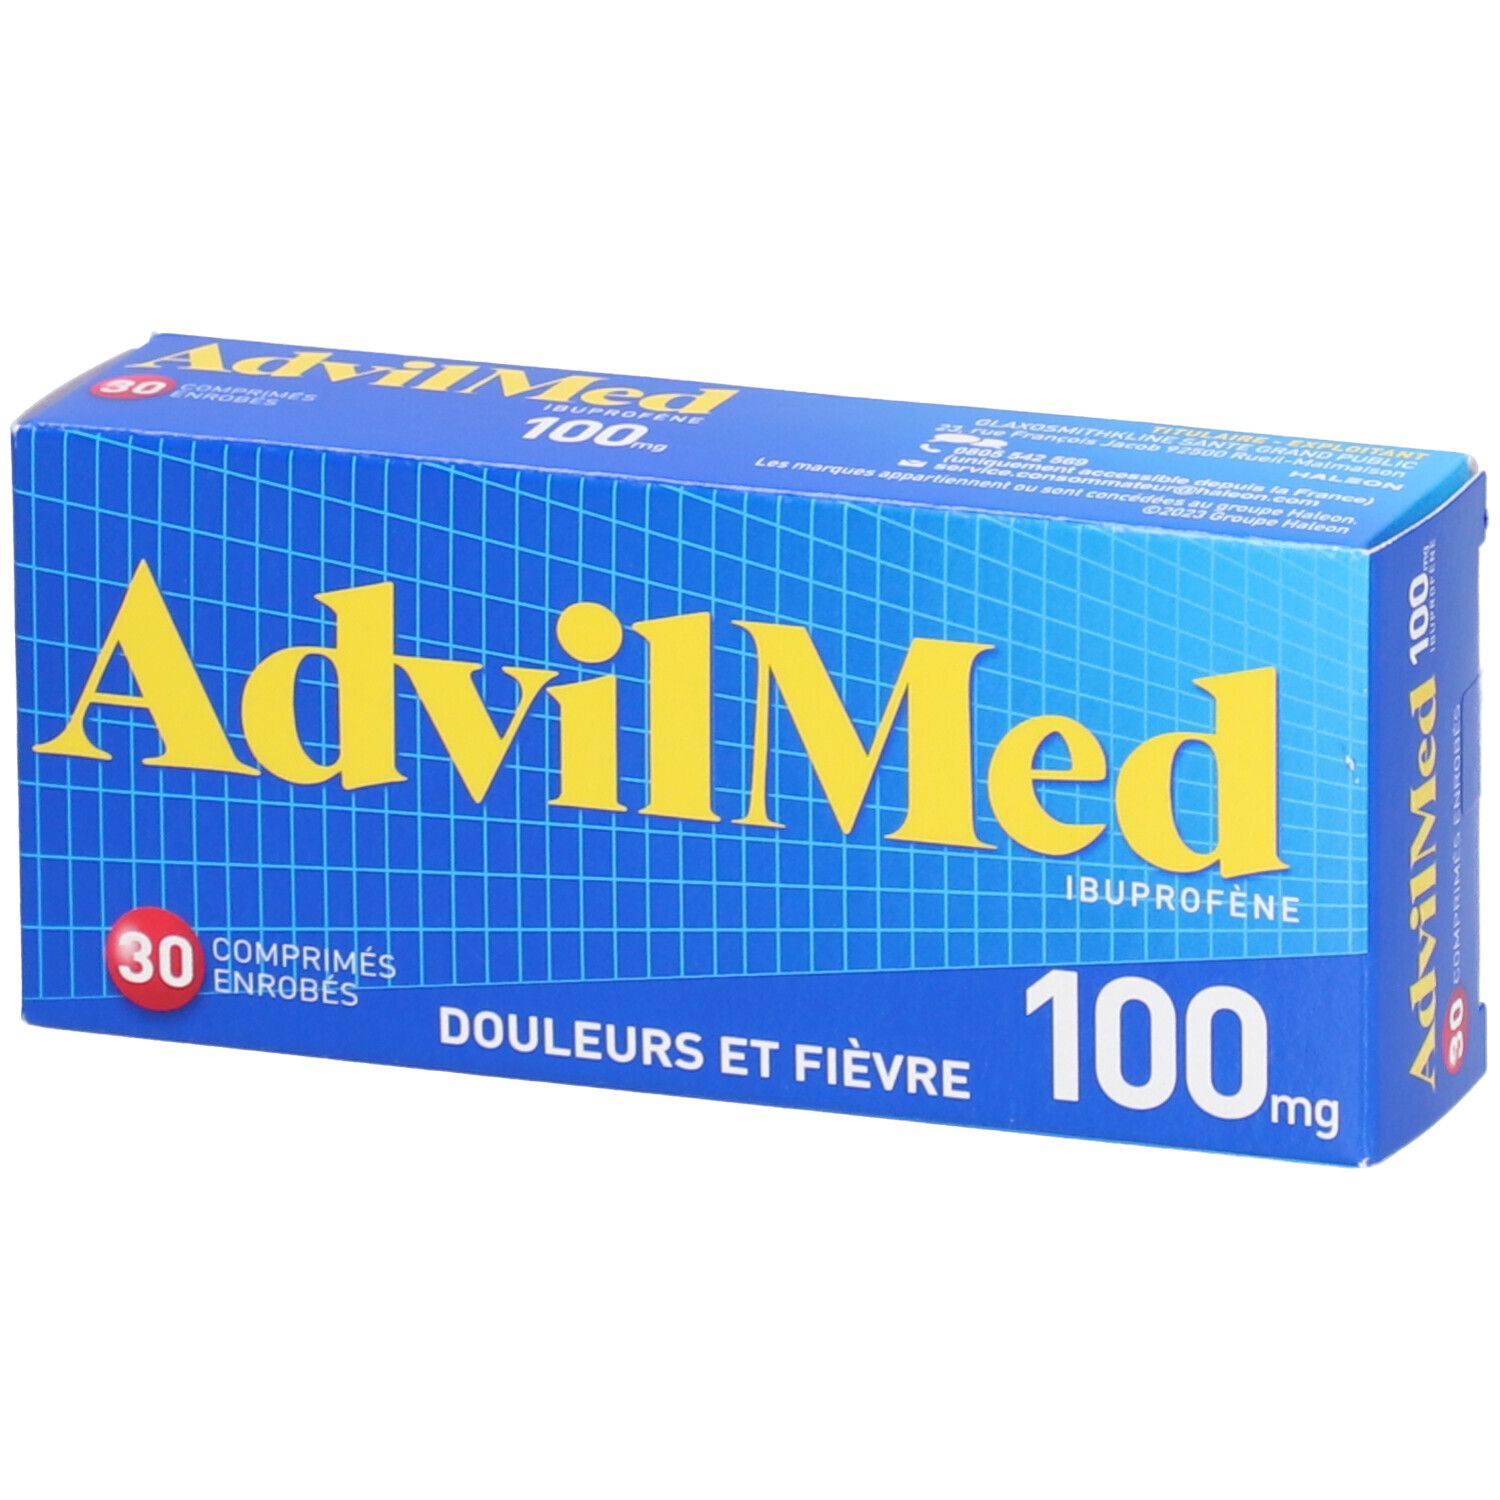 AdvilMed™ 100 mg